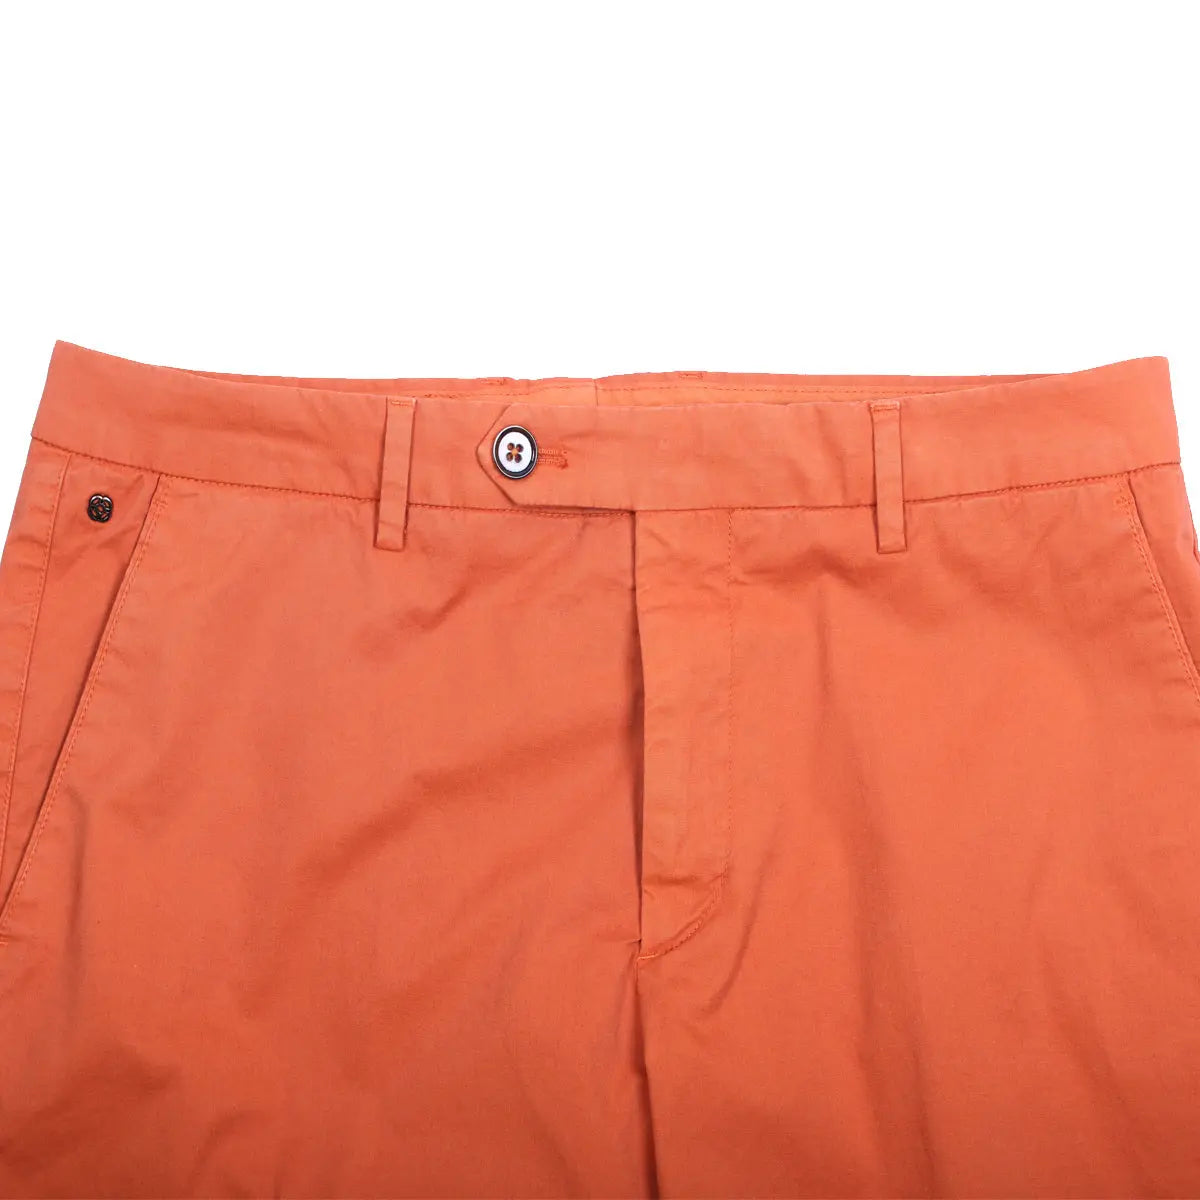 Dark Orange Cotton Stretch Slim Fit Chino Shorts  Robert Old   